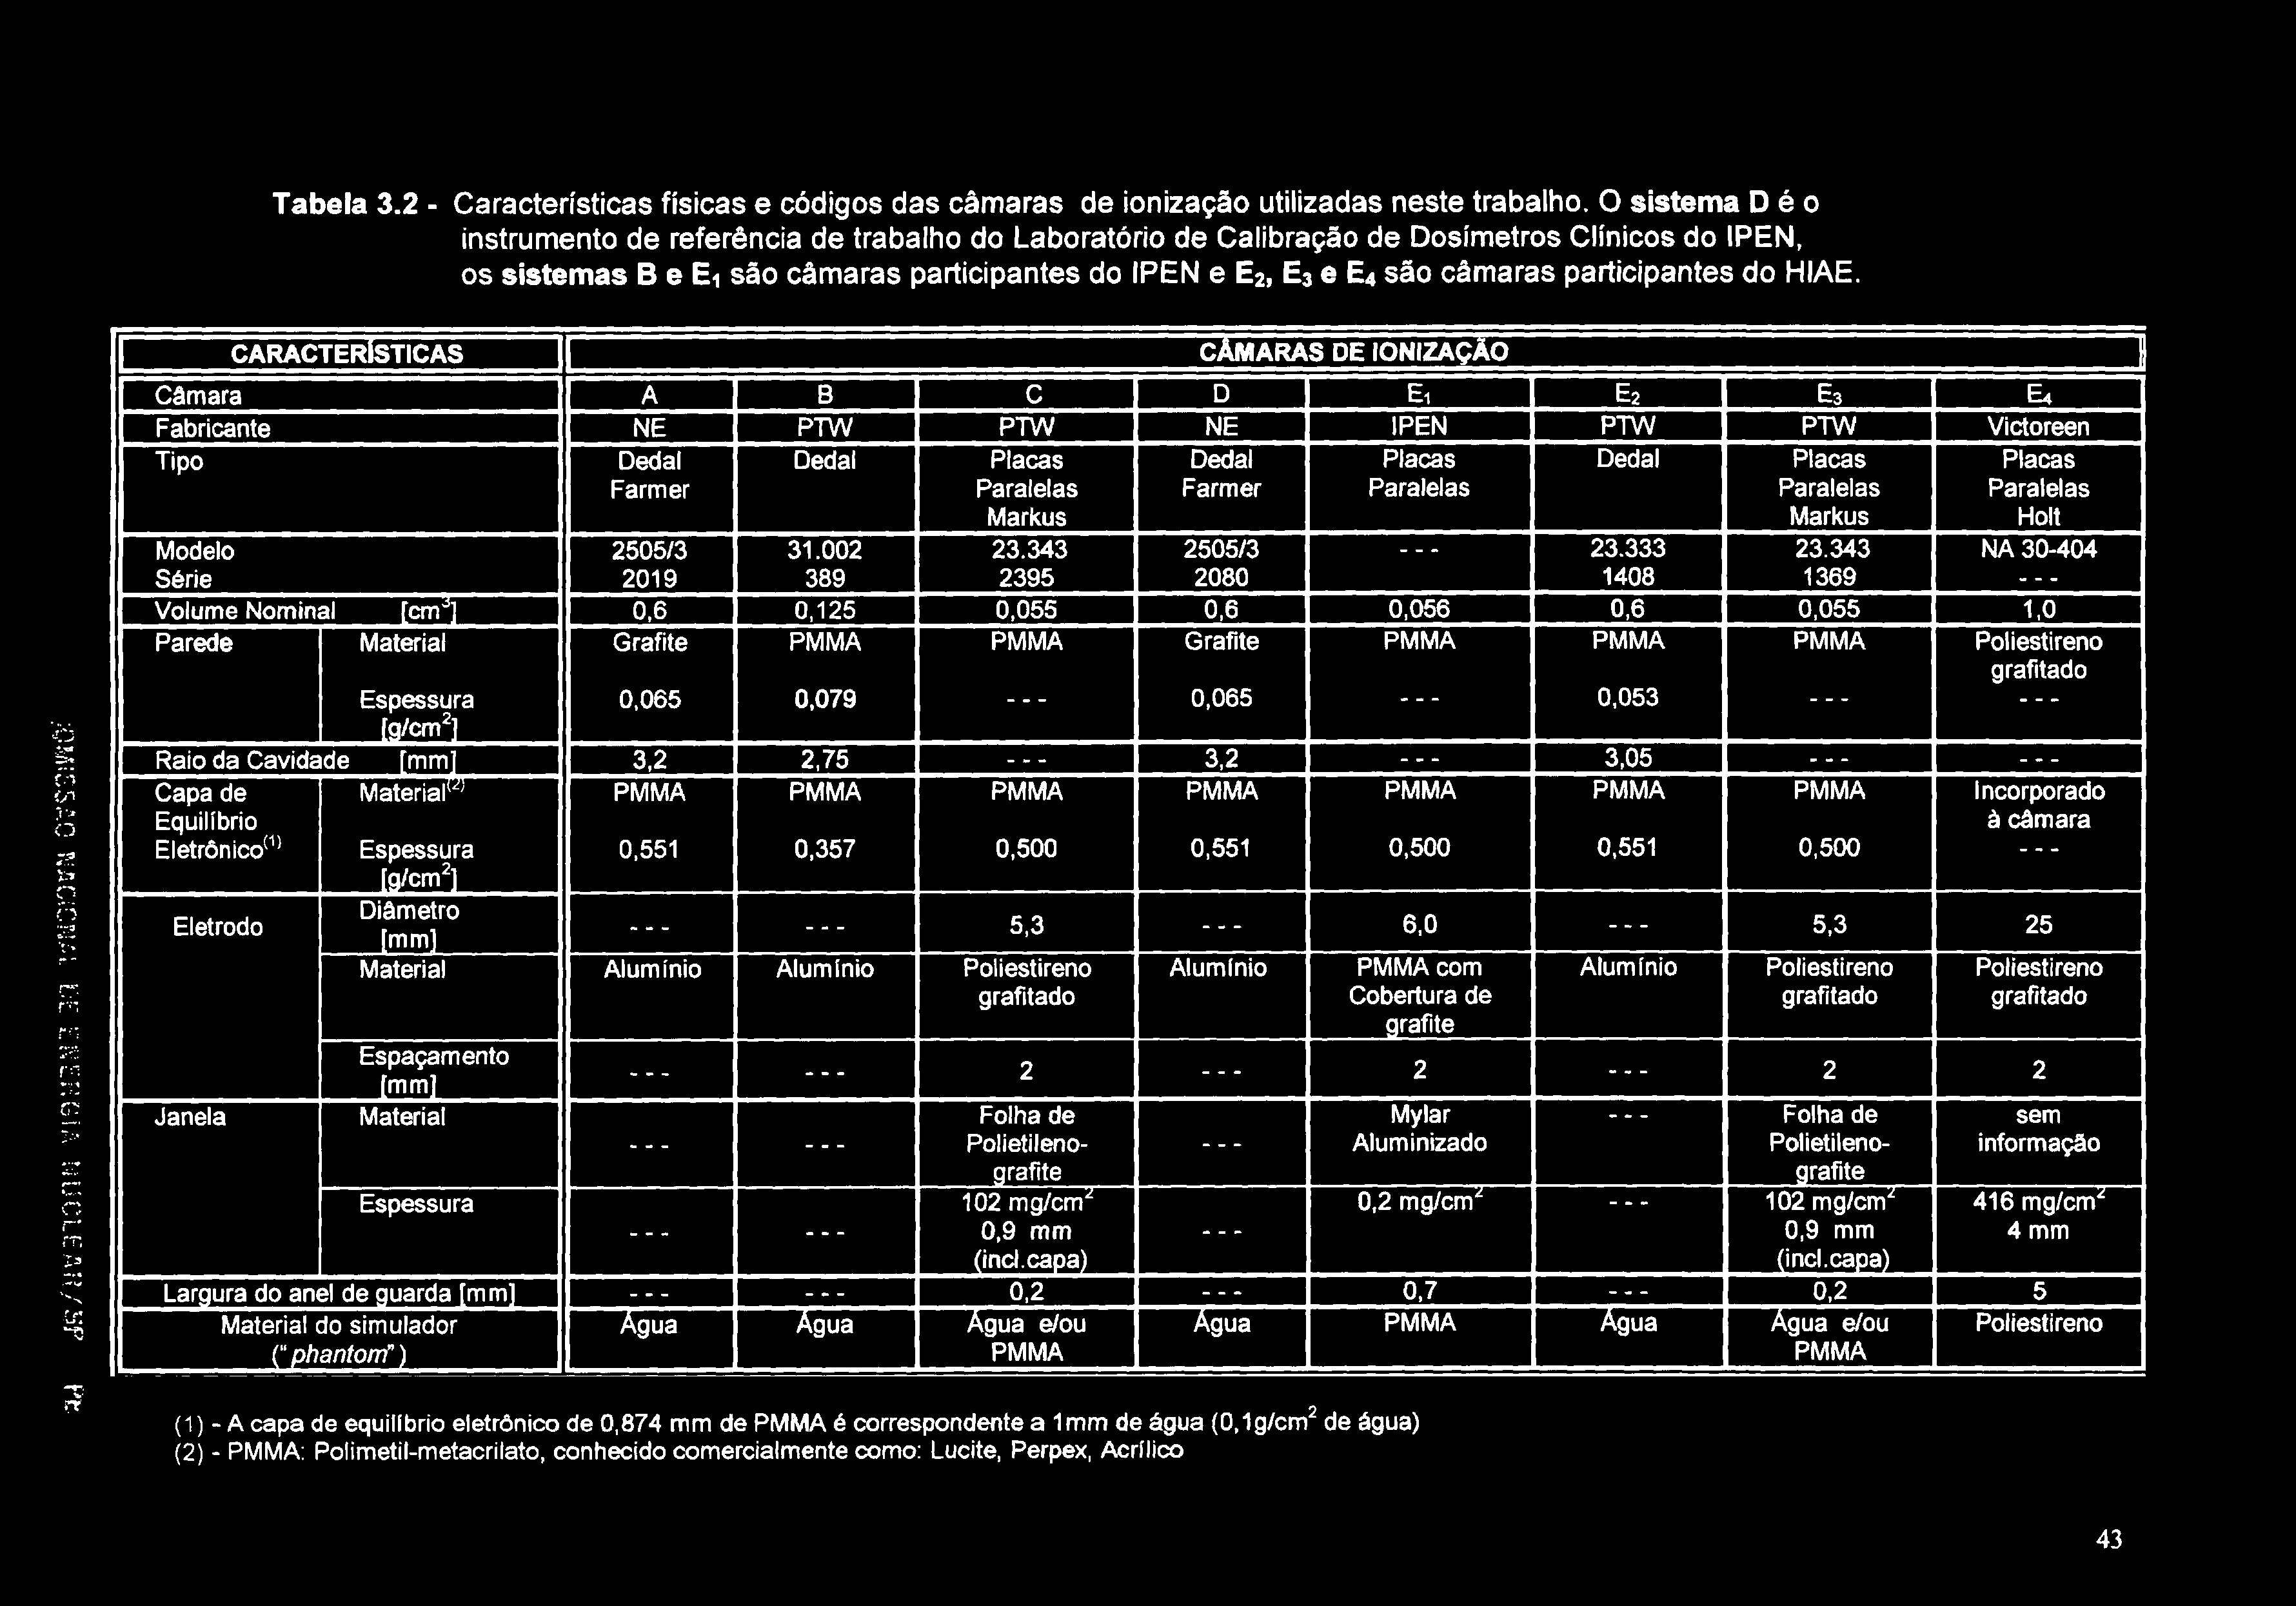 Tabela 3.2 - Características físicas e códigos das câmaras de ionização utilizadas neste trabalho.